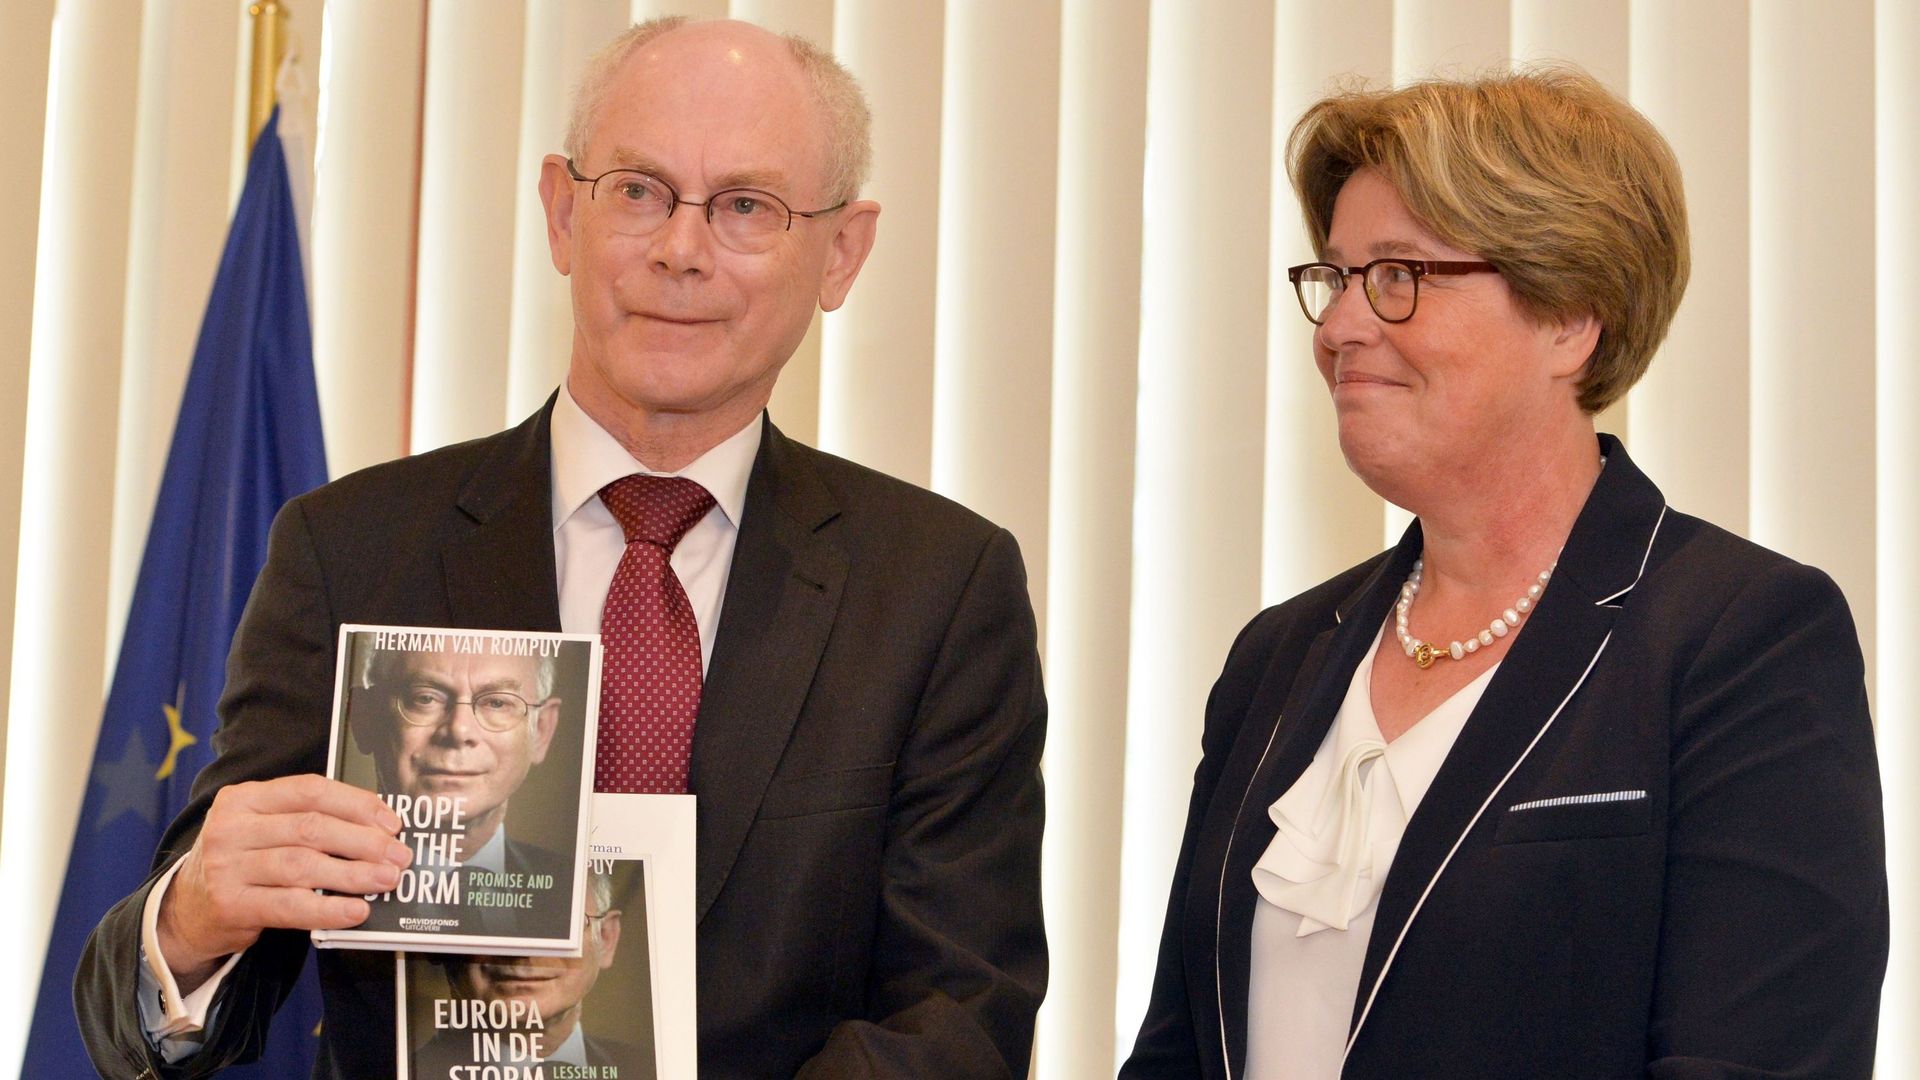 Le Président du Conseil européen Herman Van Rompuy présente son livre "L'Europe dans la tempête"